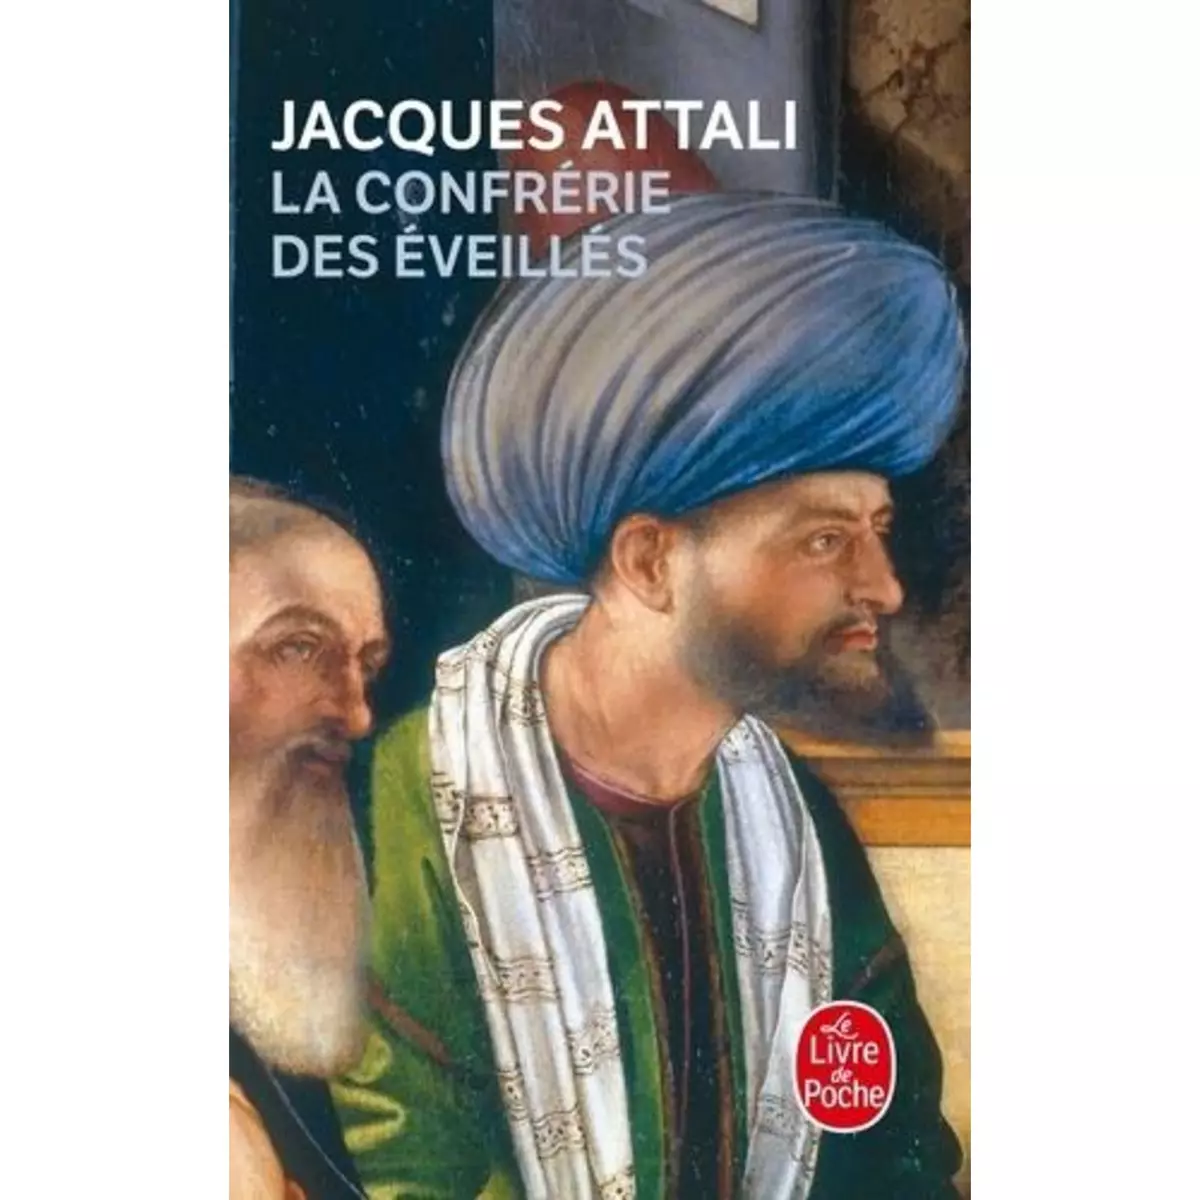  LA CONFRERIE DES EVEILLES, Attali Jacques